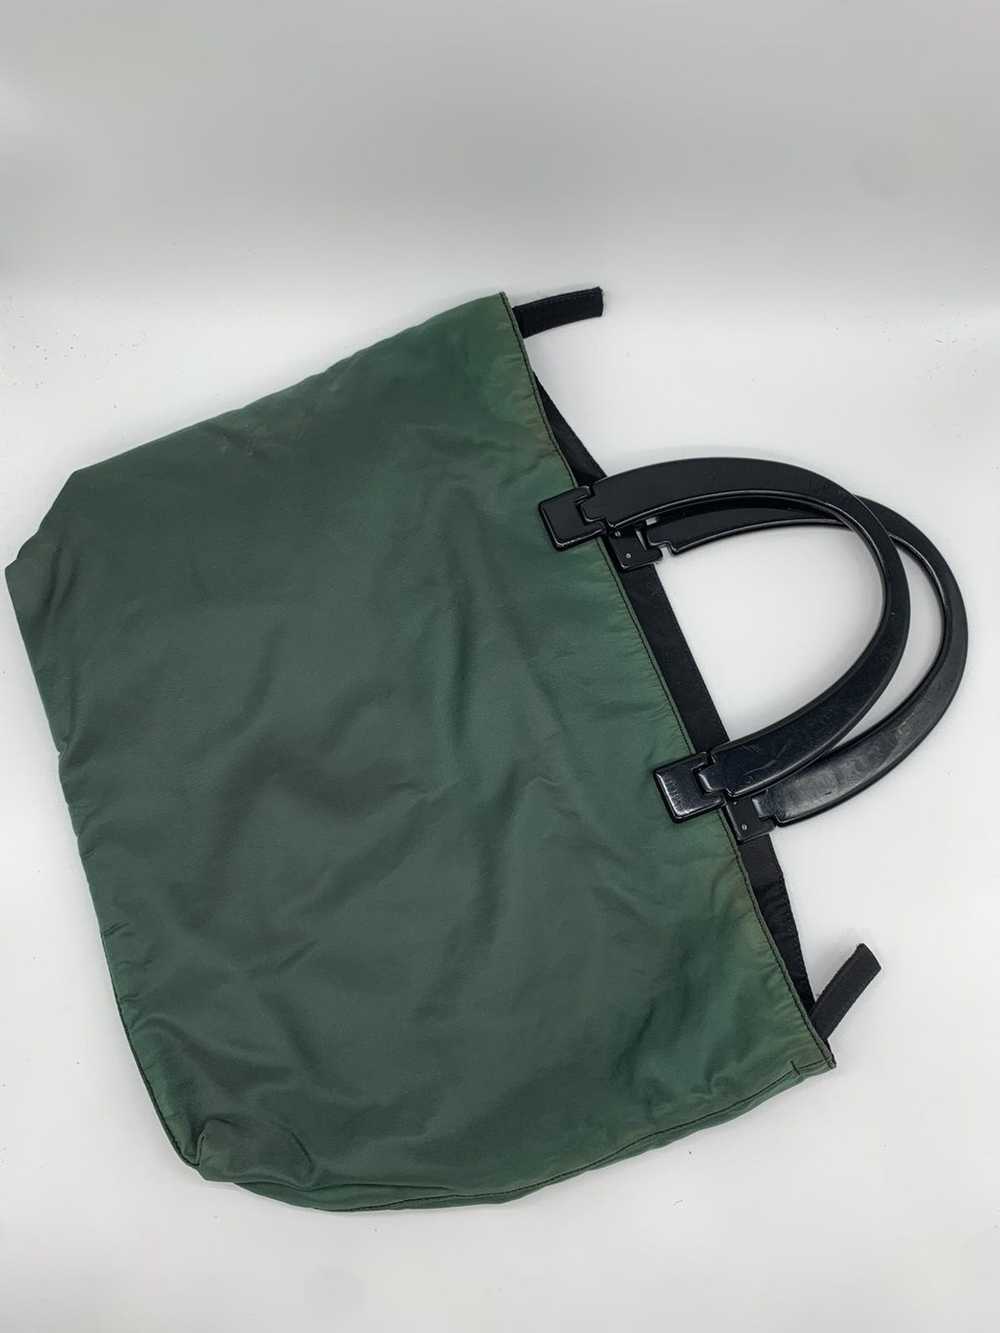 Prada Prada Green Nylon Handle Bag - image 1